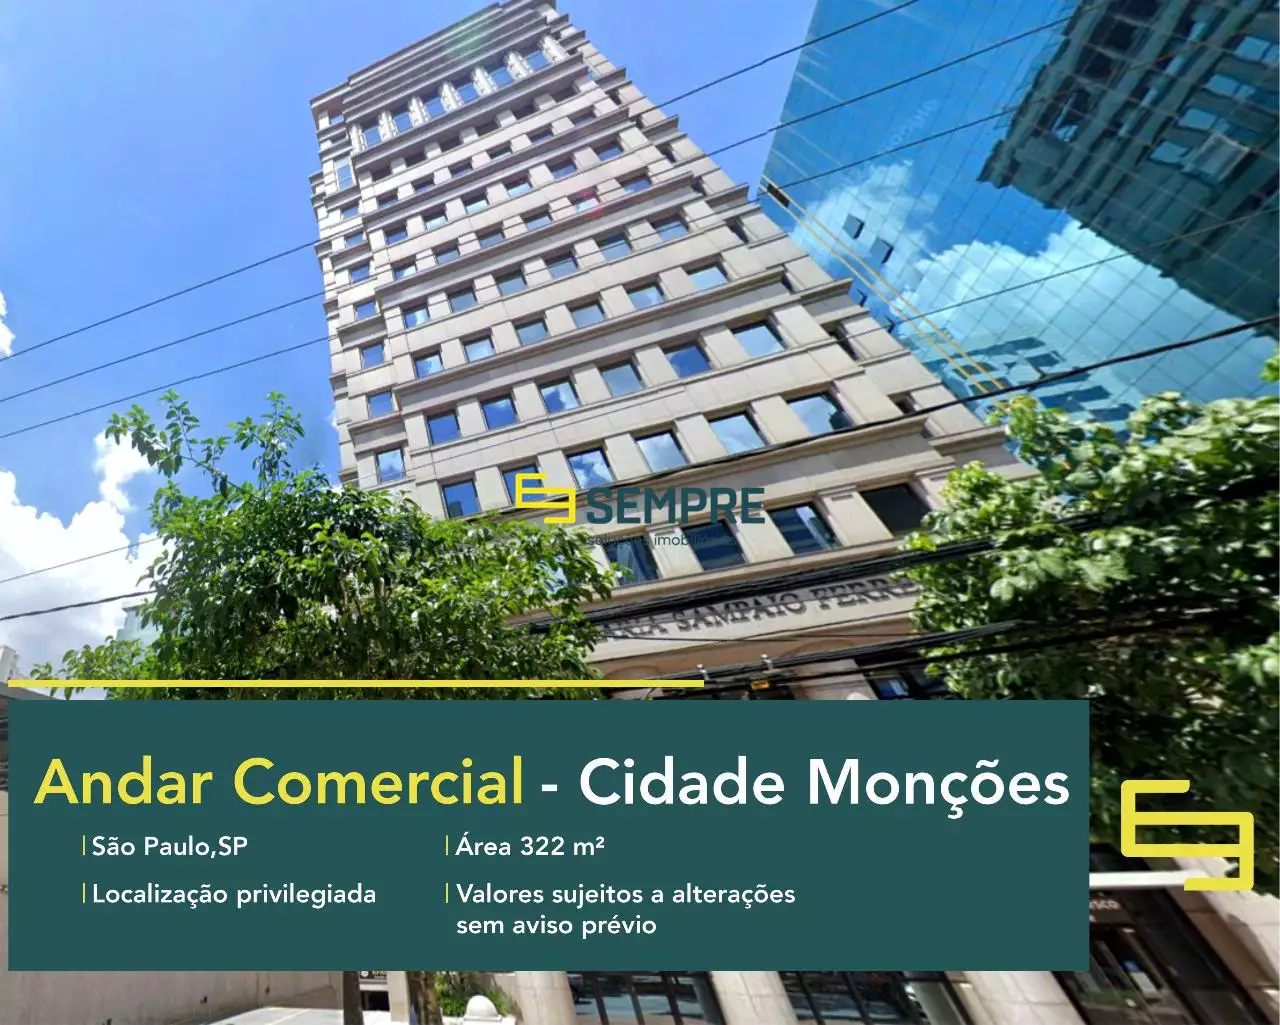 Andar comercial para locação em SP - Cidade Monções, em excelente localização. O ponto comercial conta com área de 322 m².